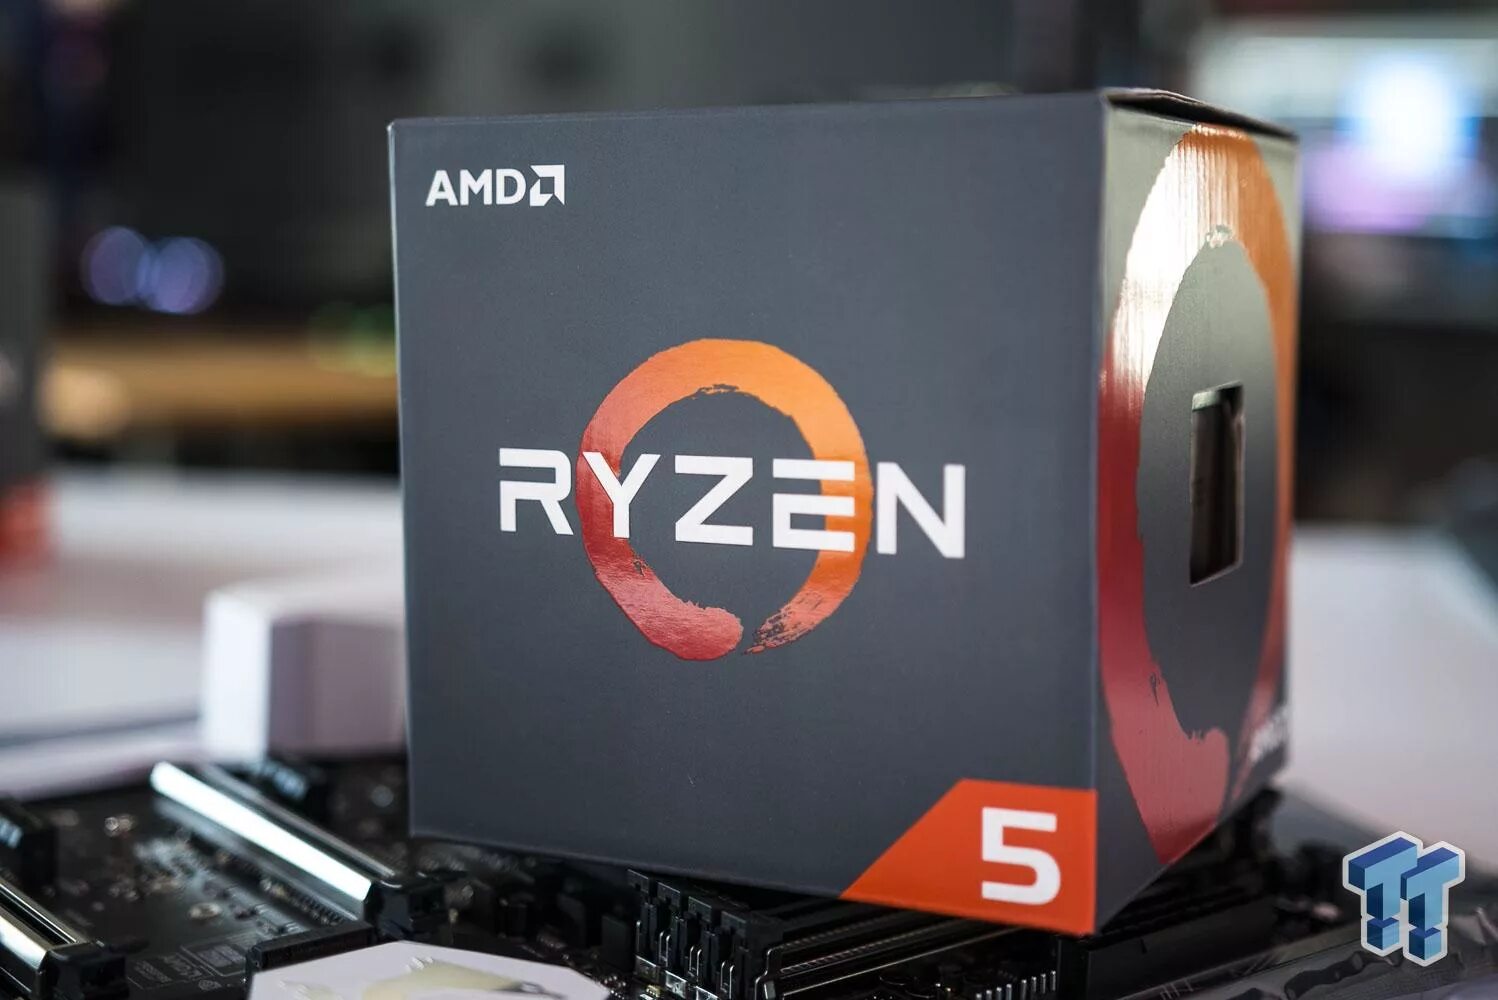 Amd ryzen 5 отзывы. AMD Ryzen 5 1600. AMD Ryzen 5 2600. AMD Ryzen 5 1600 (Box). Процессор AMD Ryzen 5 1600 (6/12 Cores).